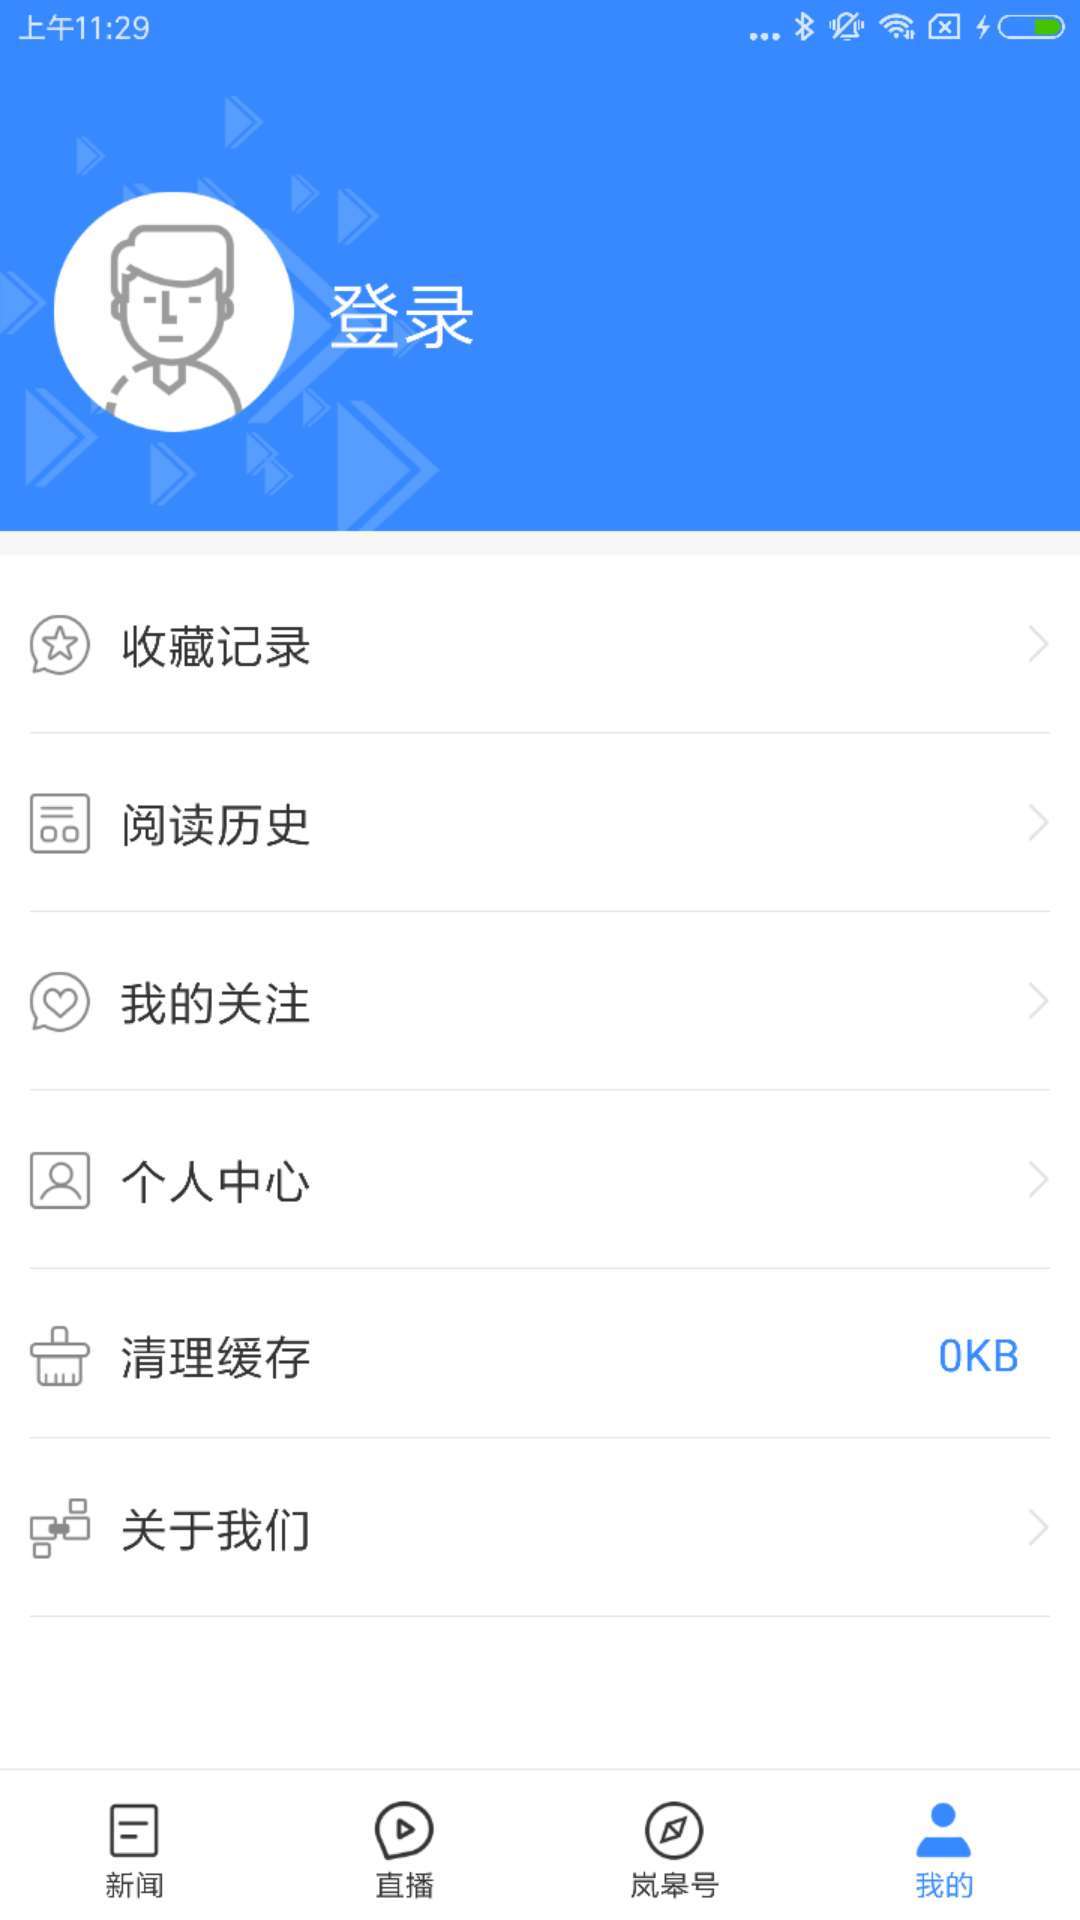 爱岚皋安卓版 V1.1.7